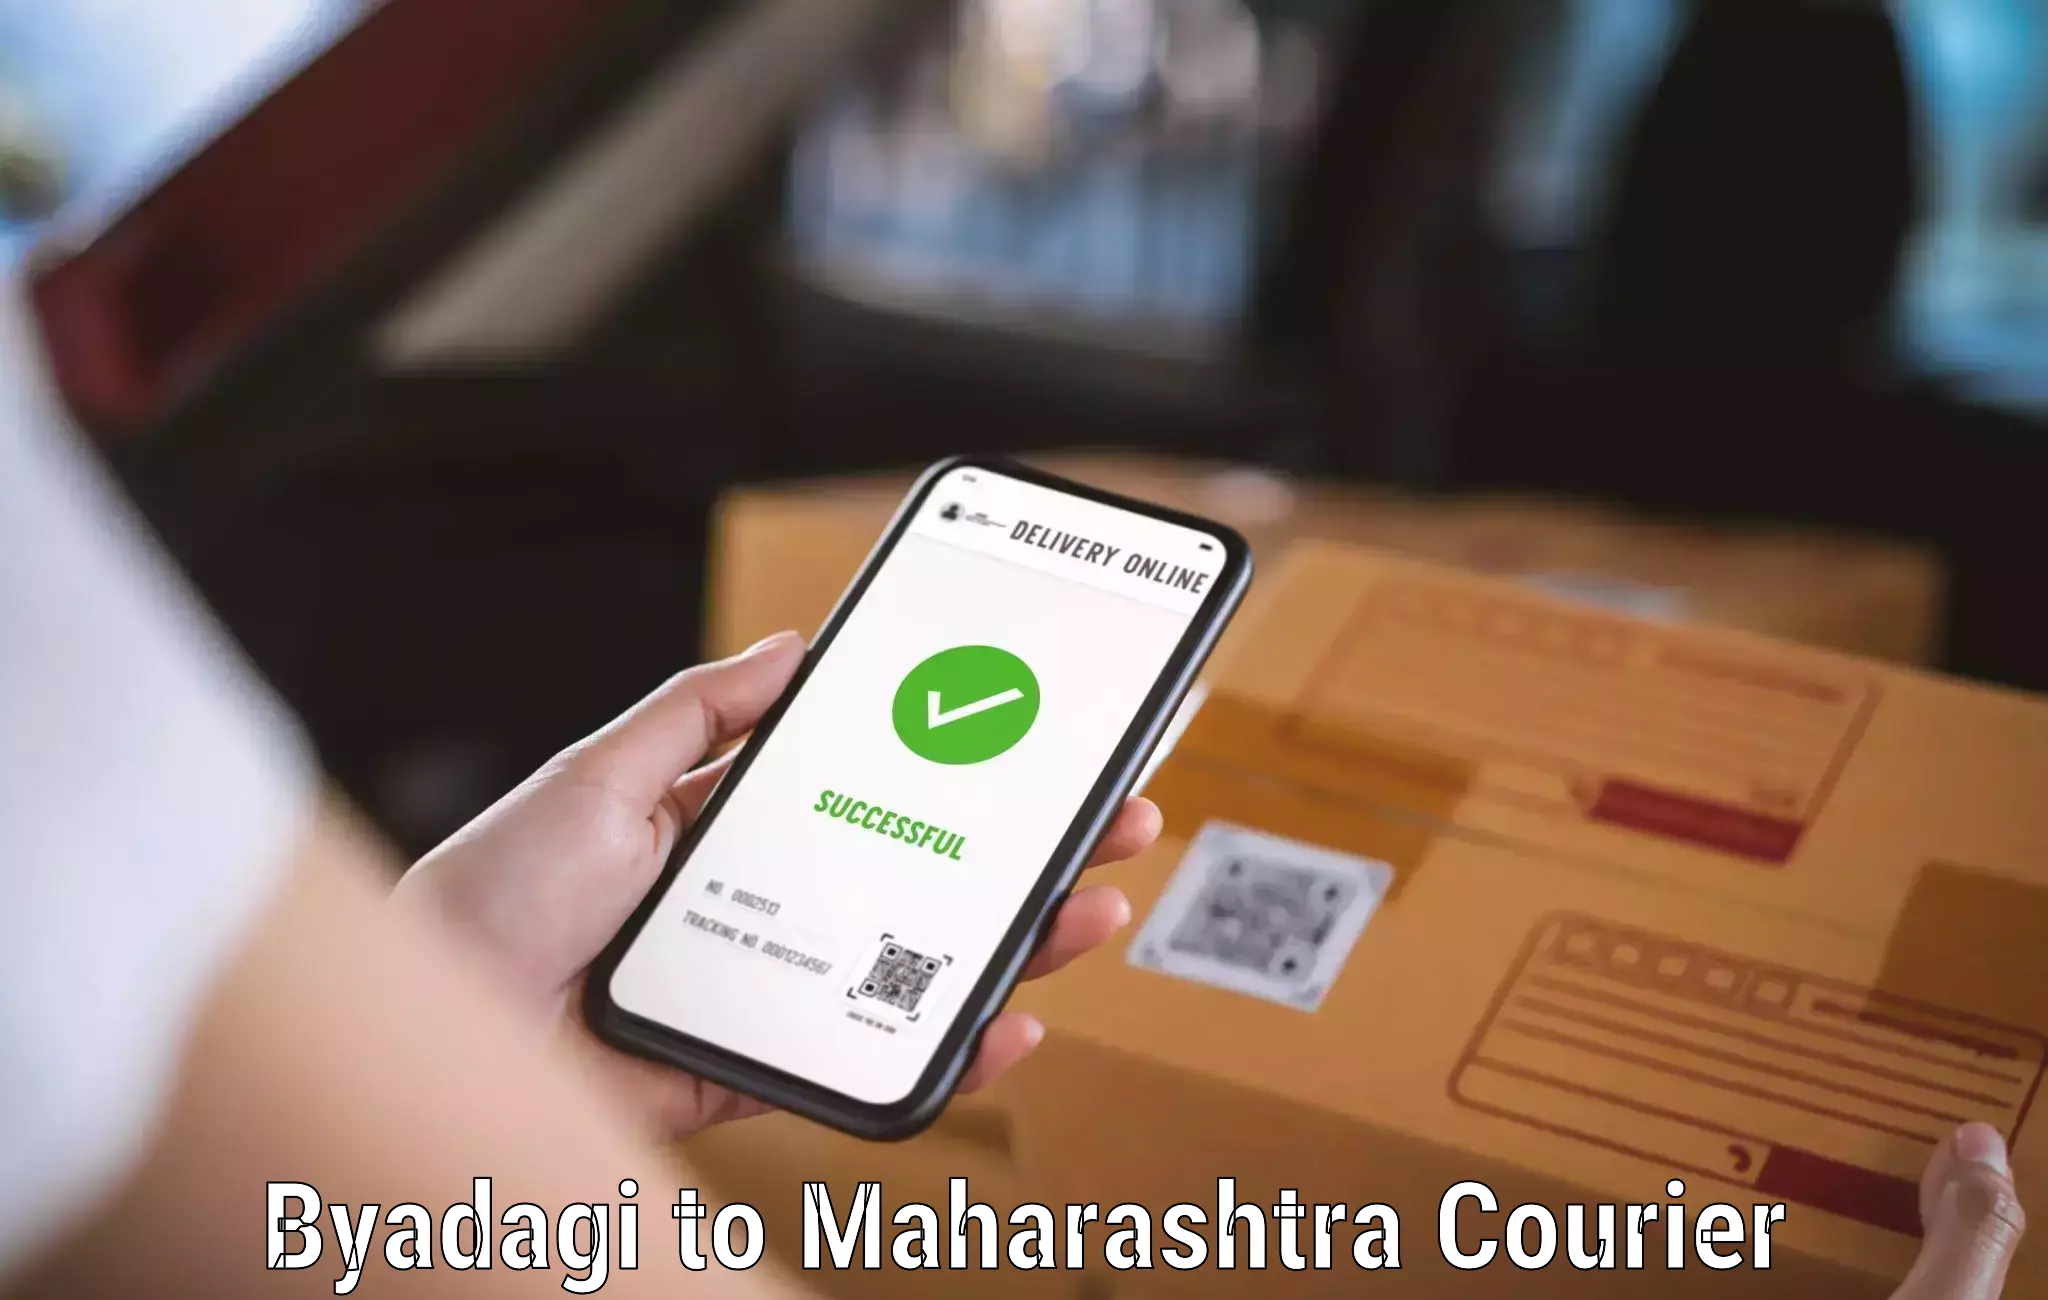 Automated parcel services Byadagi to Maharashtra